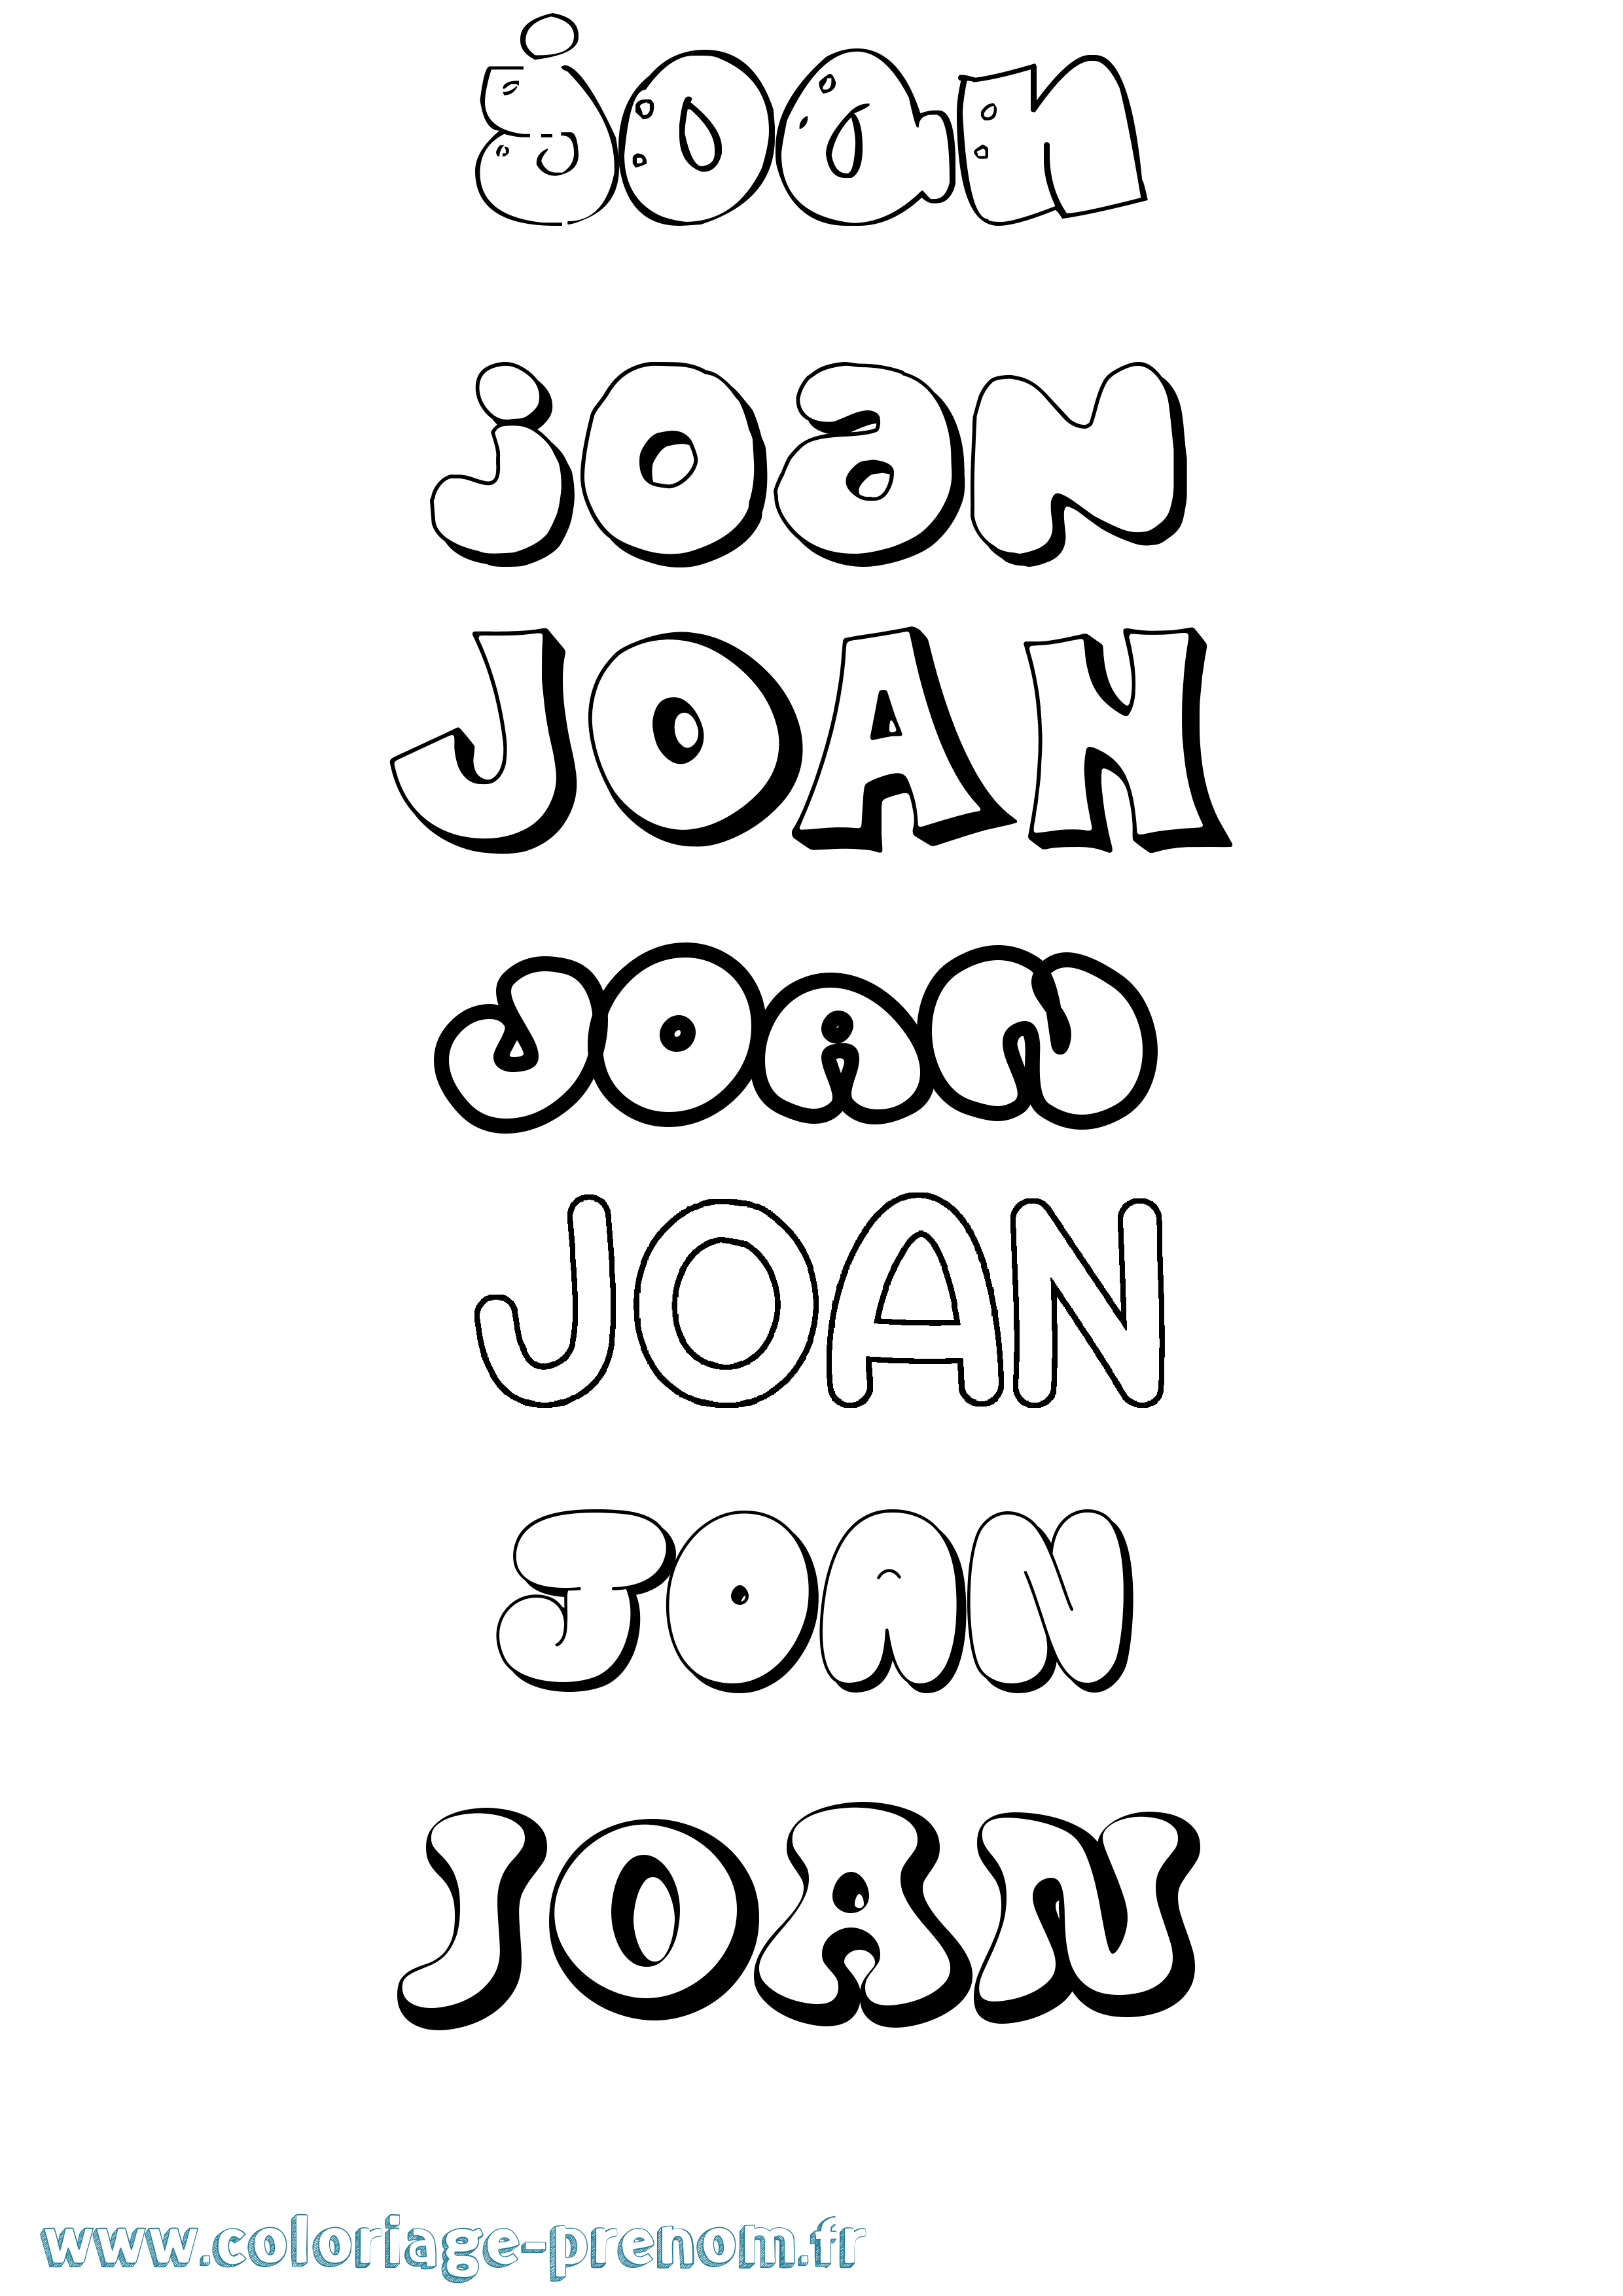 Coloriage prénom Joan